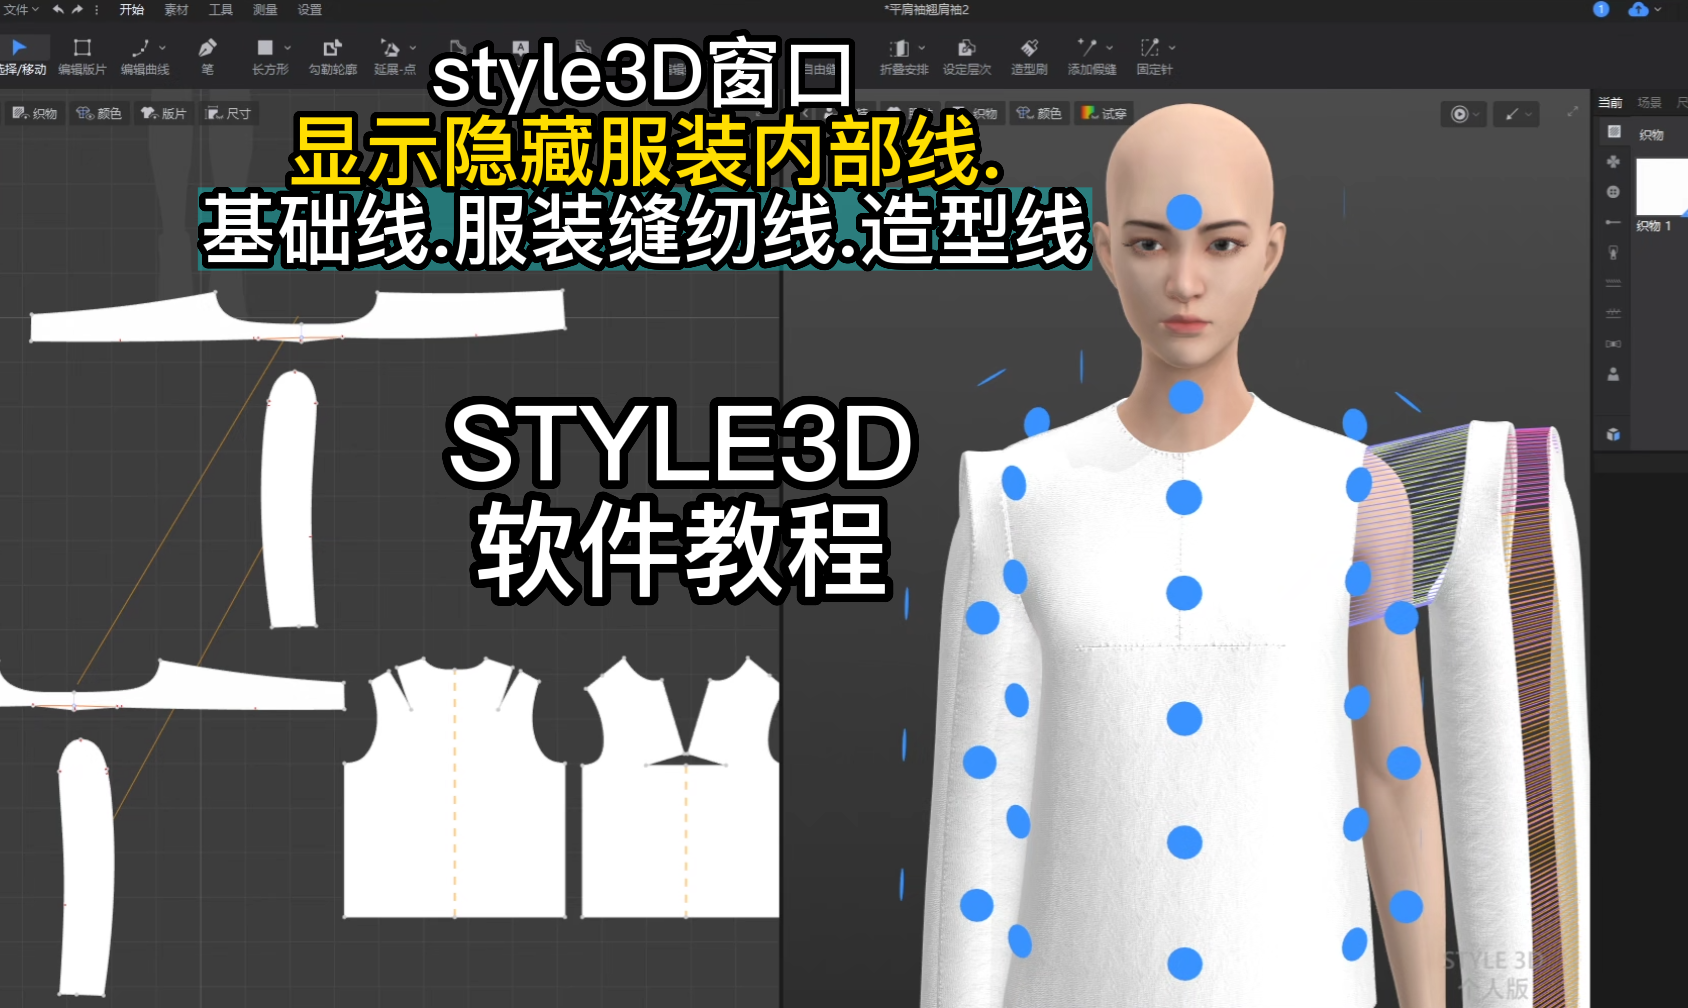 51style3D窗口-显示隐藏服装内部线.基础线.服装缝纫线.造型线.png